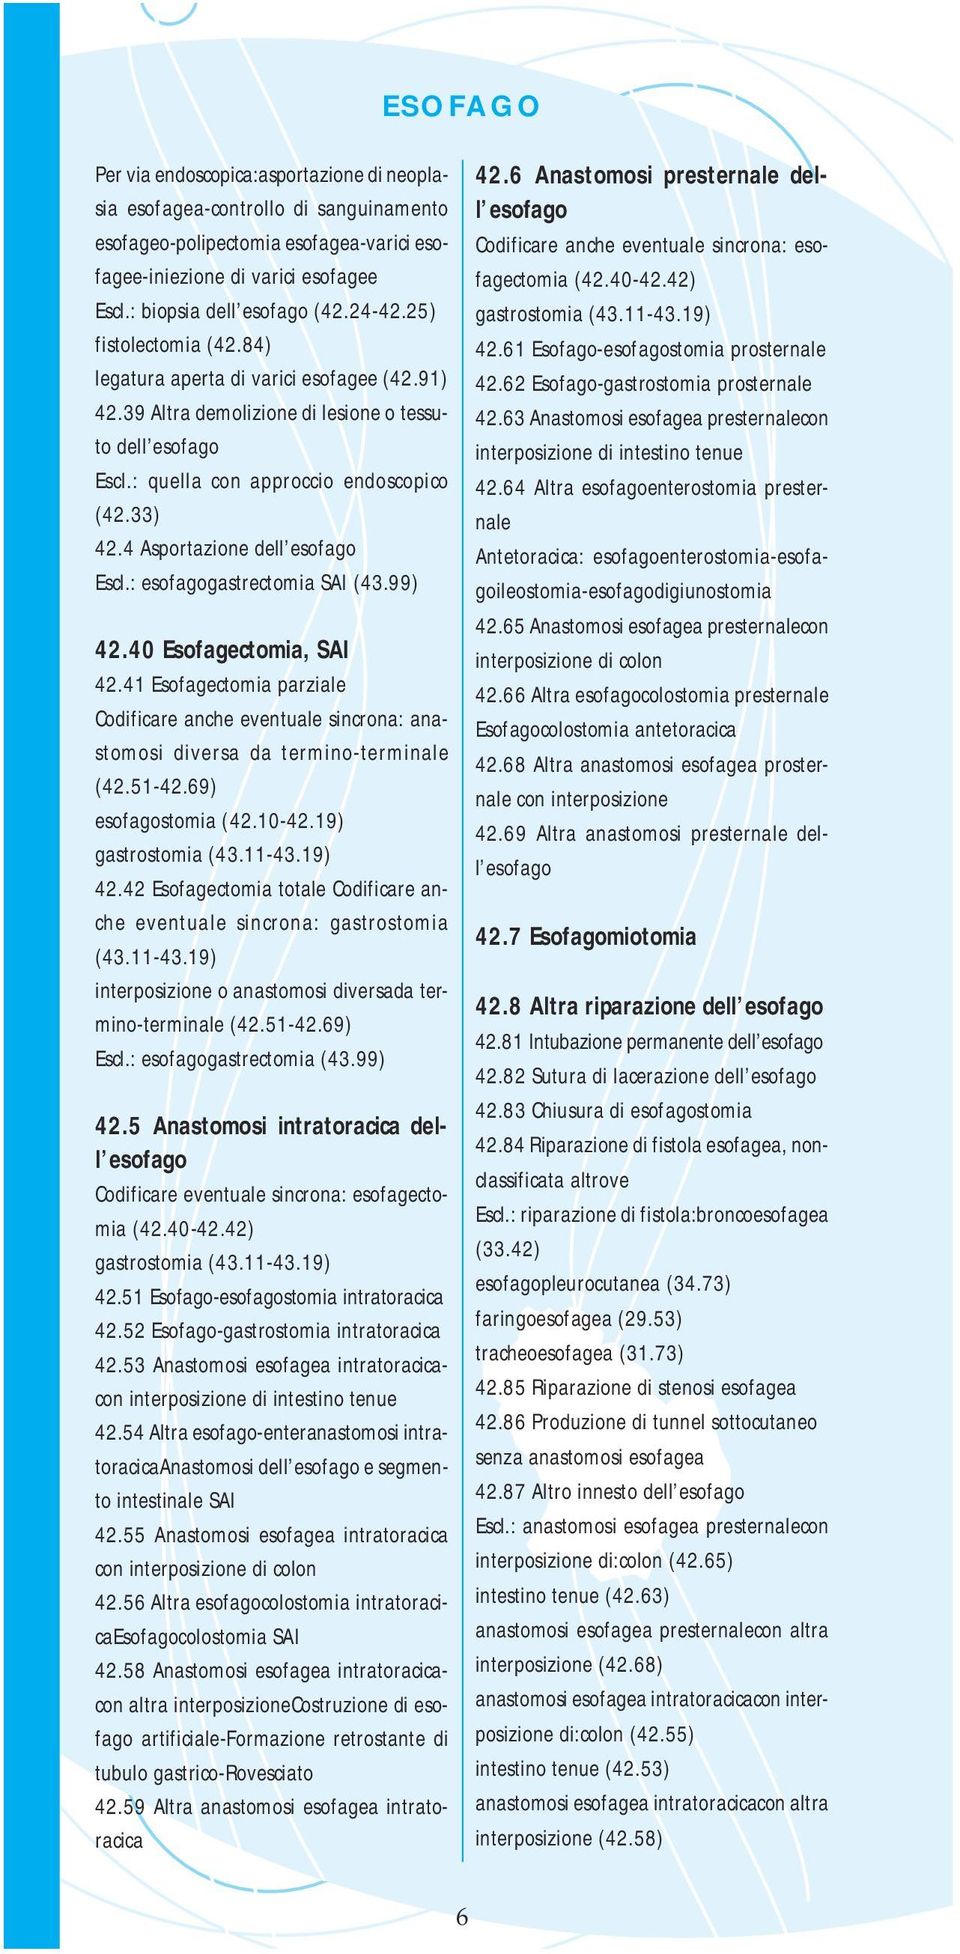 4 Asportazione dell esofago Escl.: esofagogastrectomia SAI (43.99) 42.40 Esofagectomia, SAI 42.